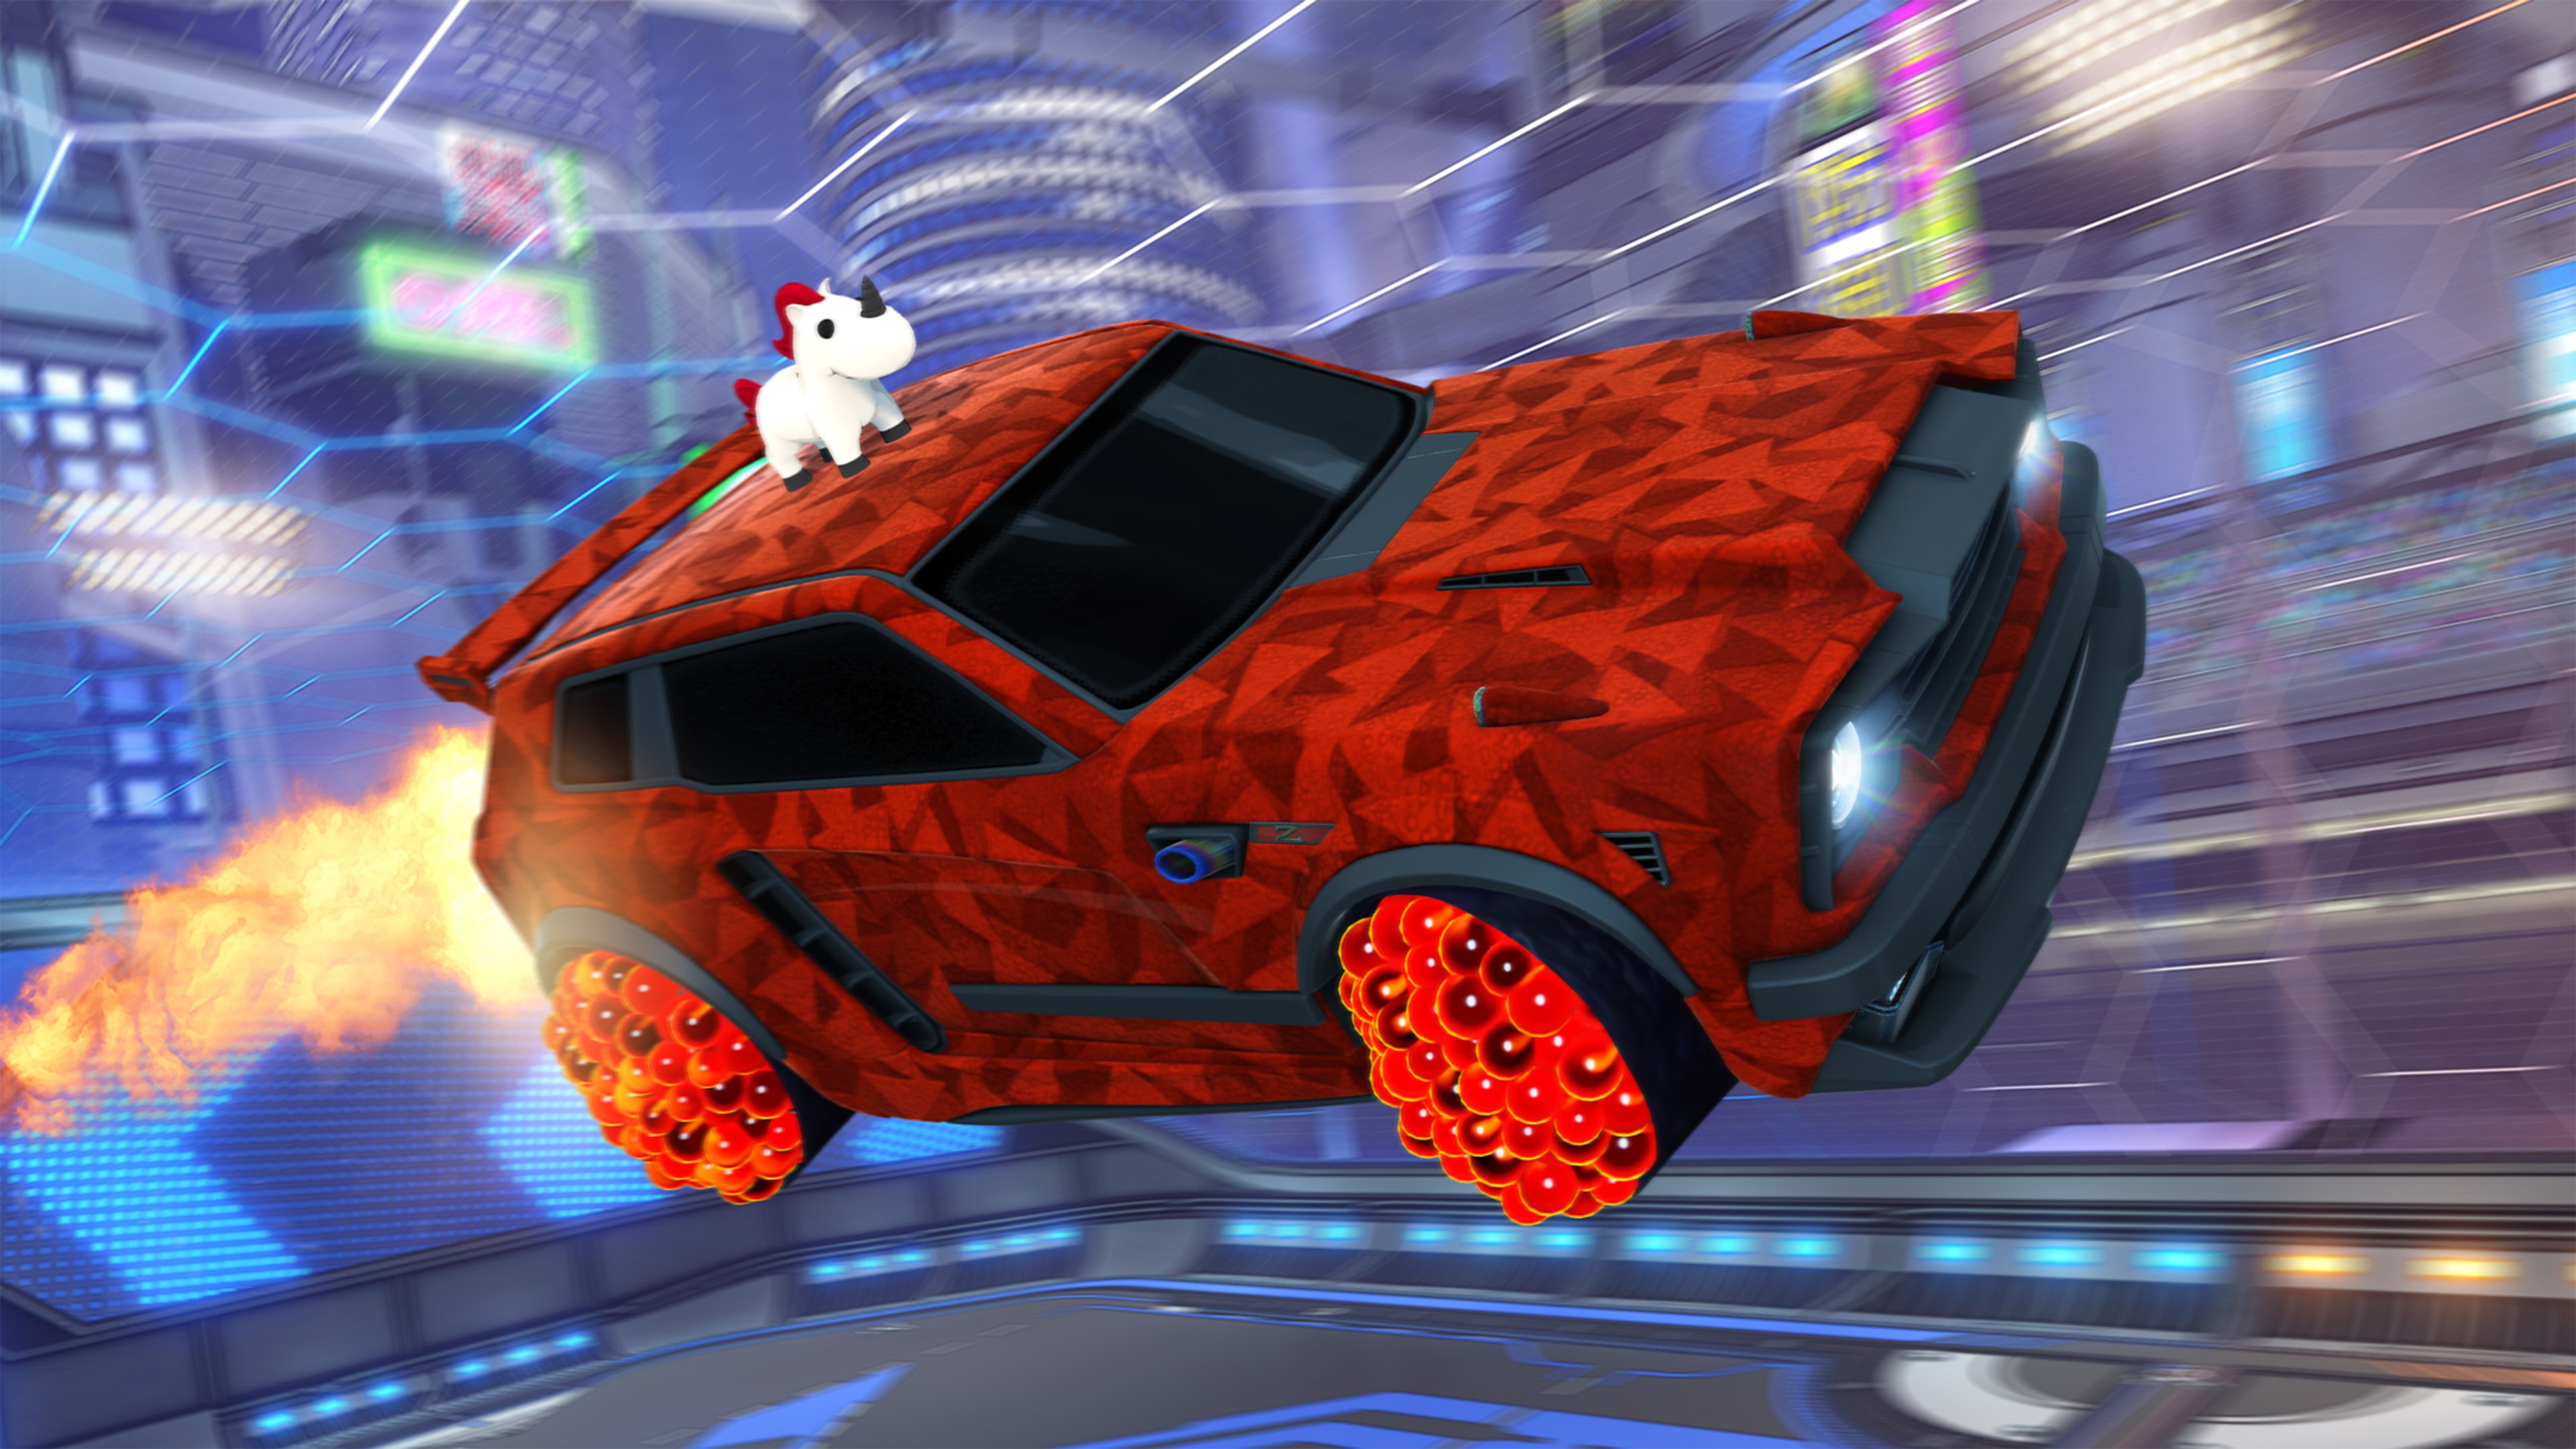 Rocket League – zrzut ekranu przedstawiający samochód ze zwierzęciem podobnym do jednorożca na dachu i czerwonym, geometrycznym lakierem